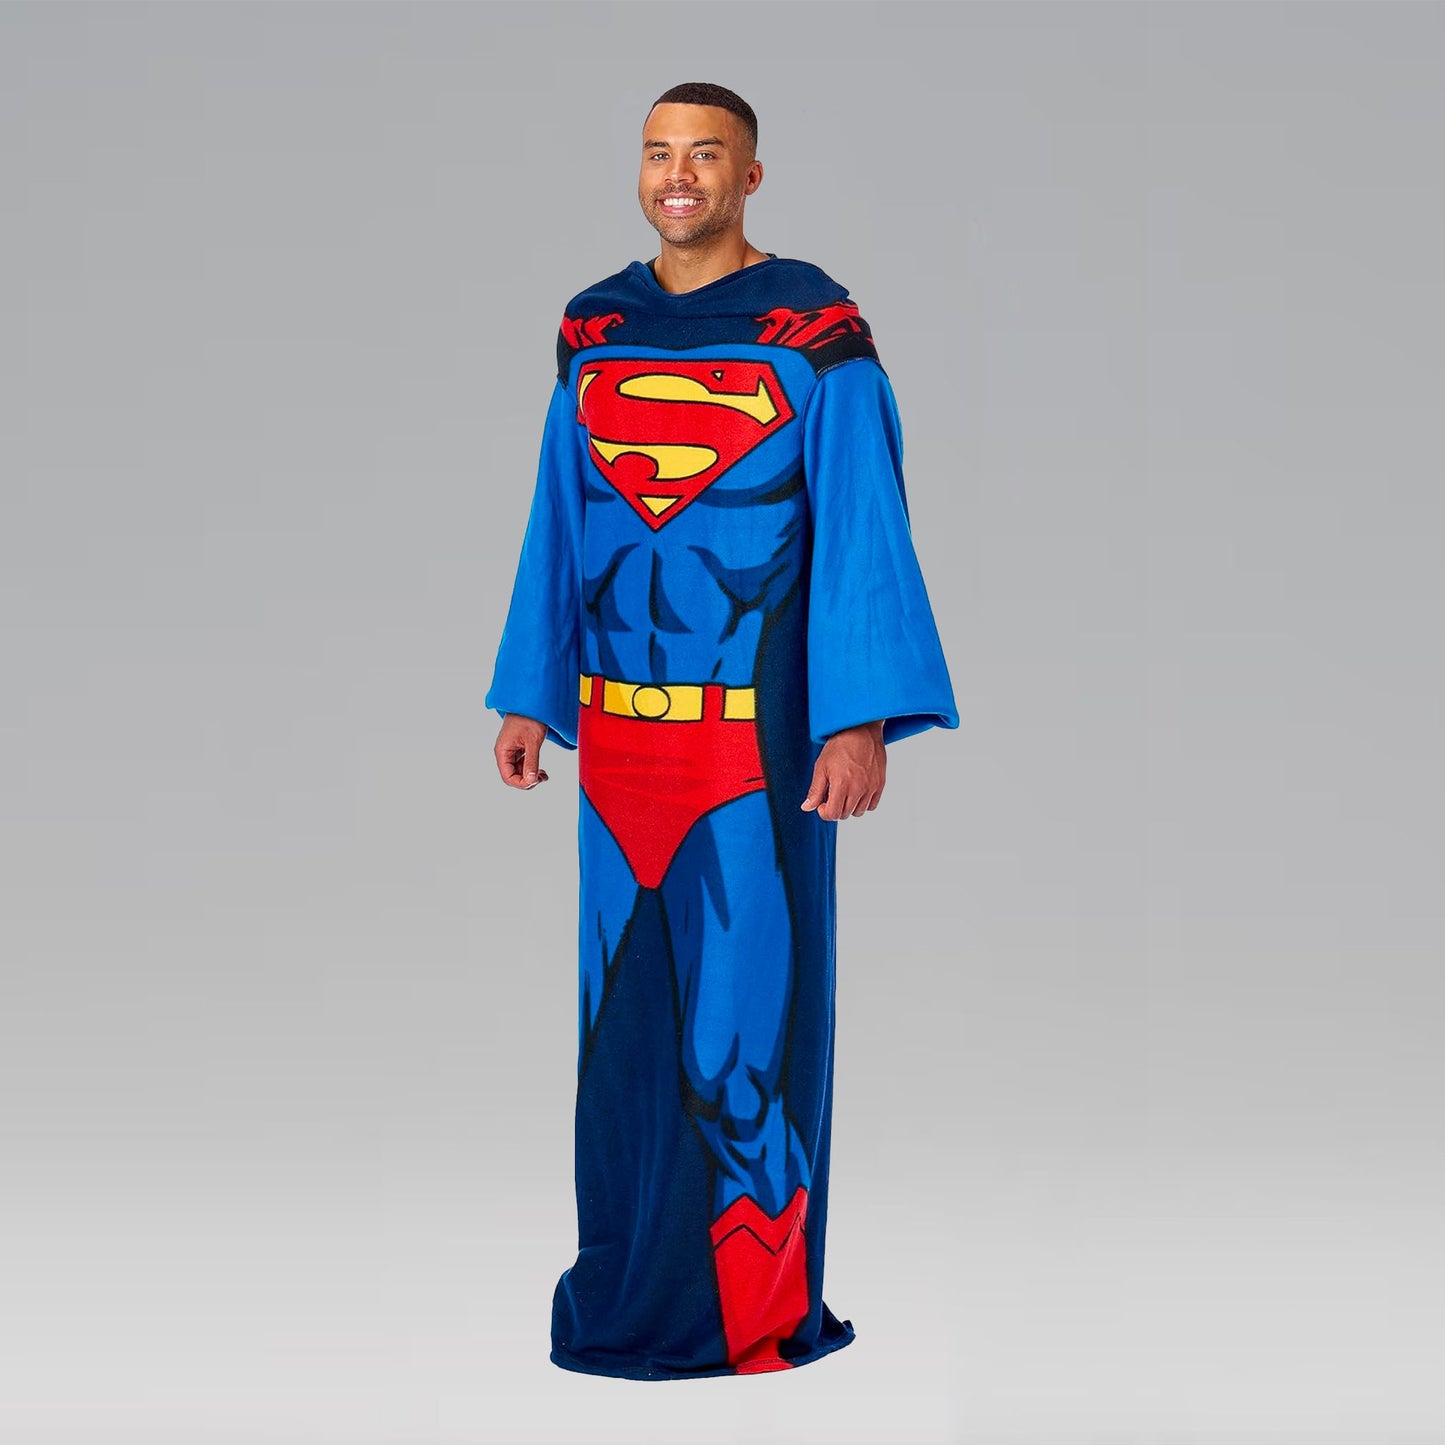 Superman Blanket With Sleeves